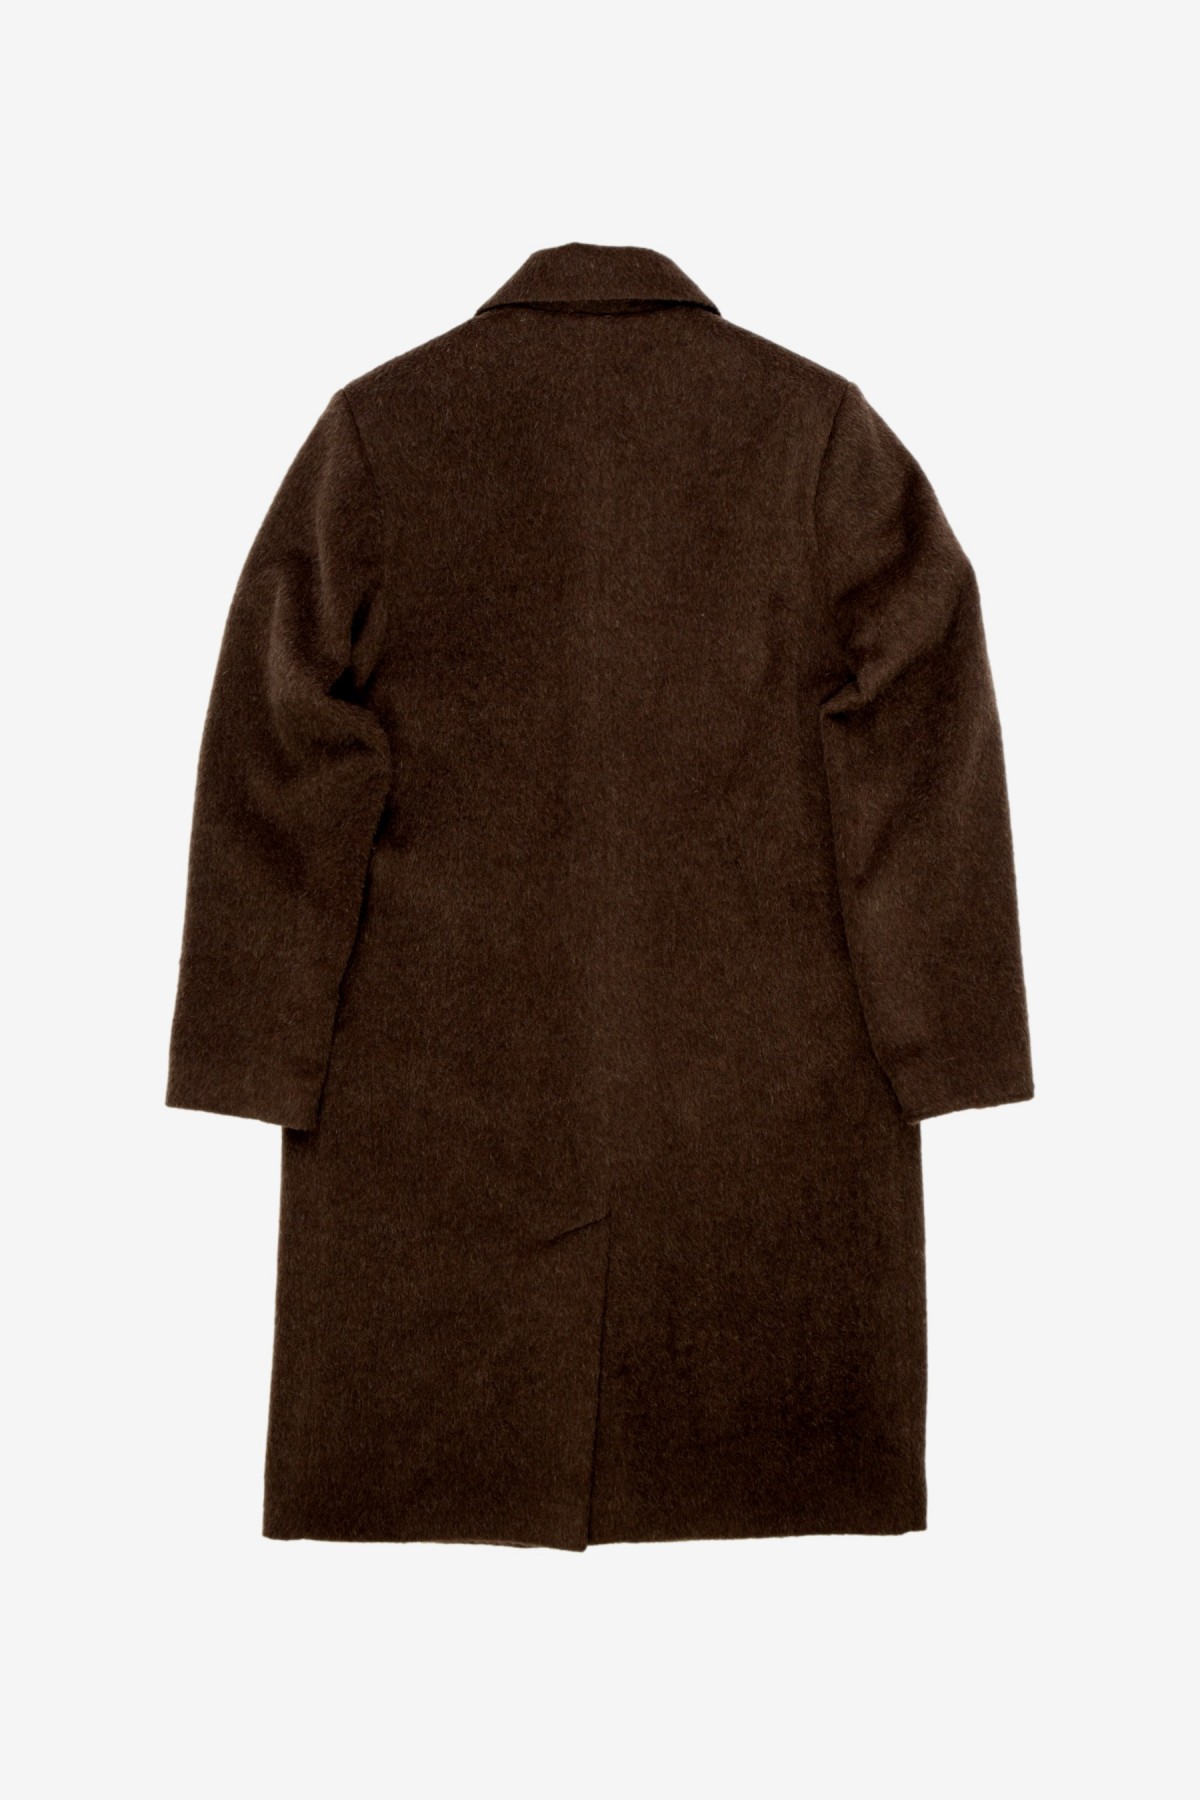 Séfr Esco Coat in Brown Mohair